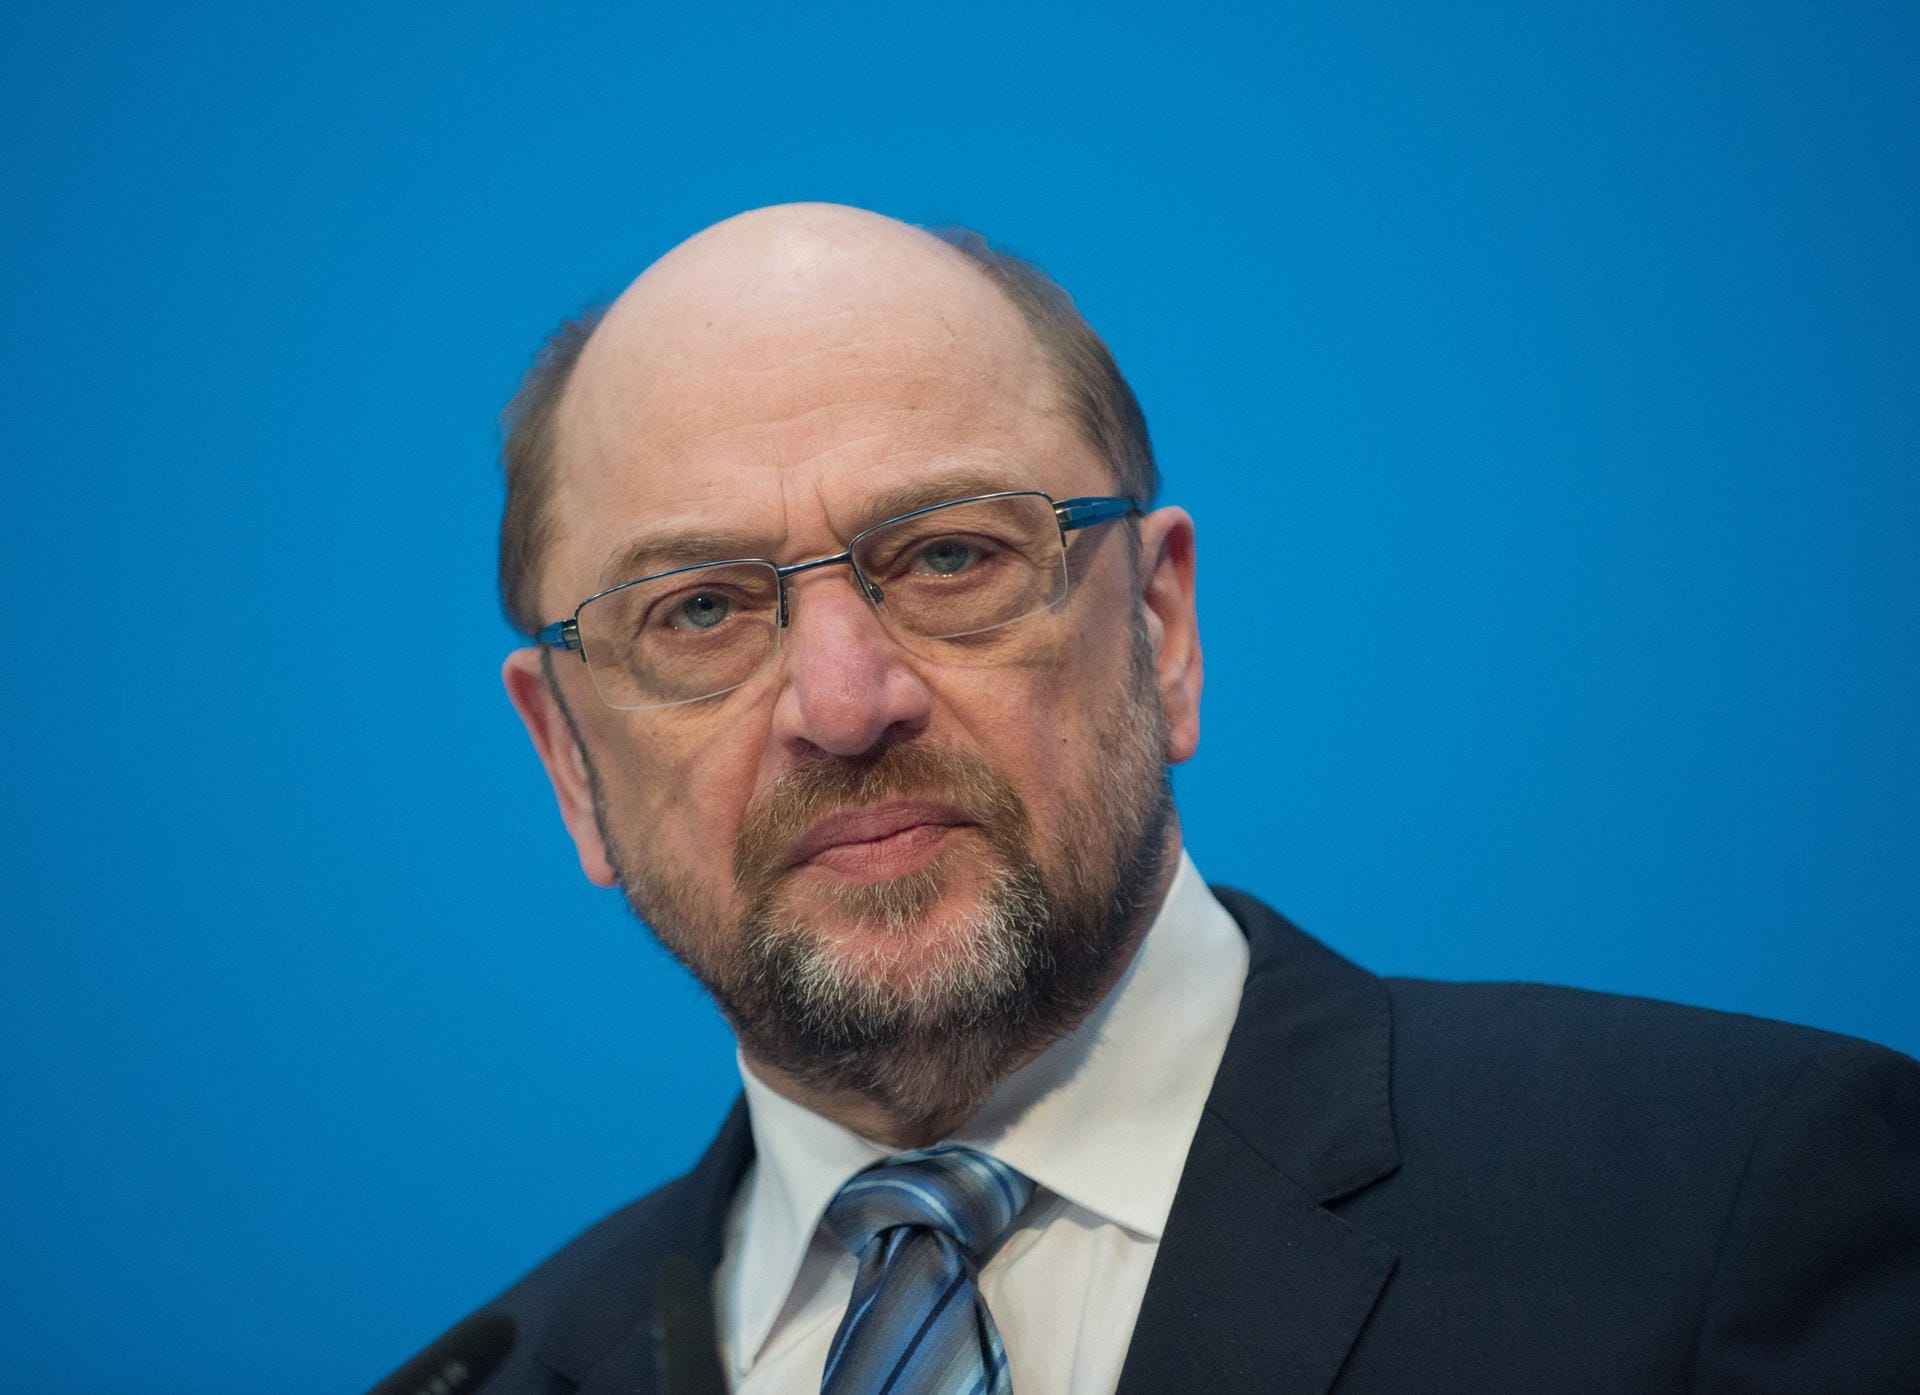 Martin Schulz: Als Kanzlerkandidat ist der ehemalige Präsident des Europäischen Parlaments gescheitert, seine Zeit als Parteichef dauerte nur kurz. Seit Tagen ist er als Bewerber um den Fraktionsvorsitz im Gespräch. Am Dienstag will er allerdings nicht antreten.